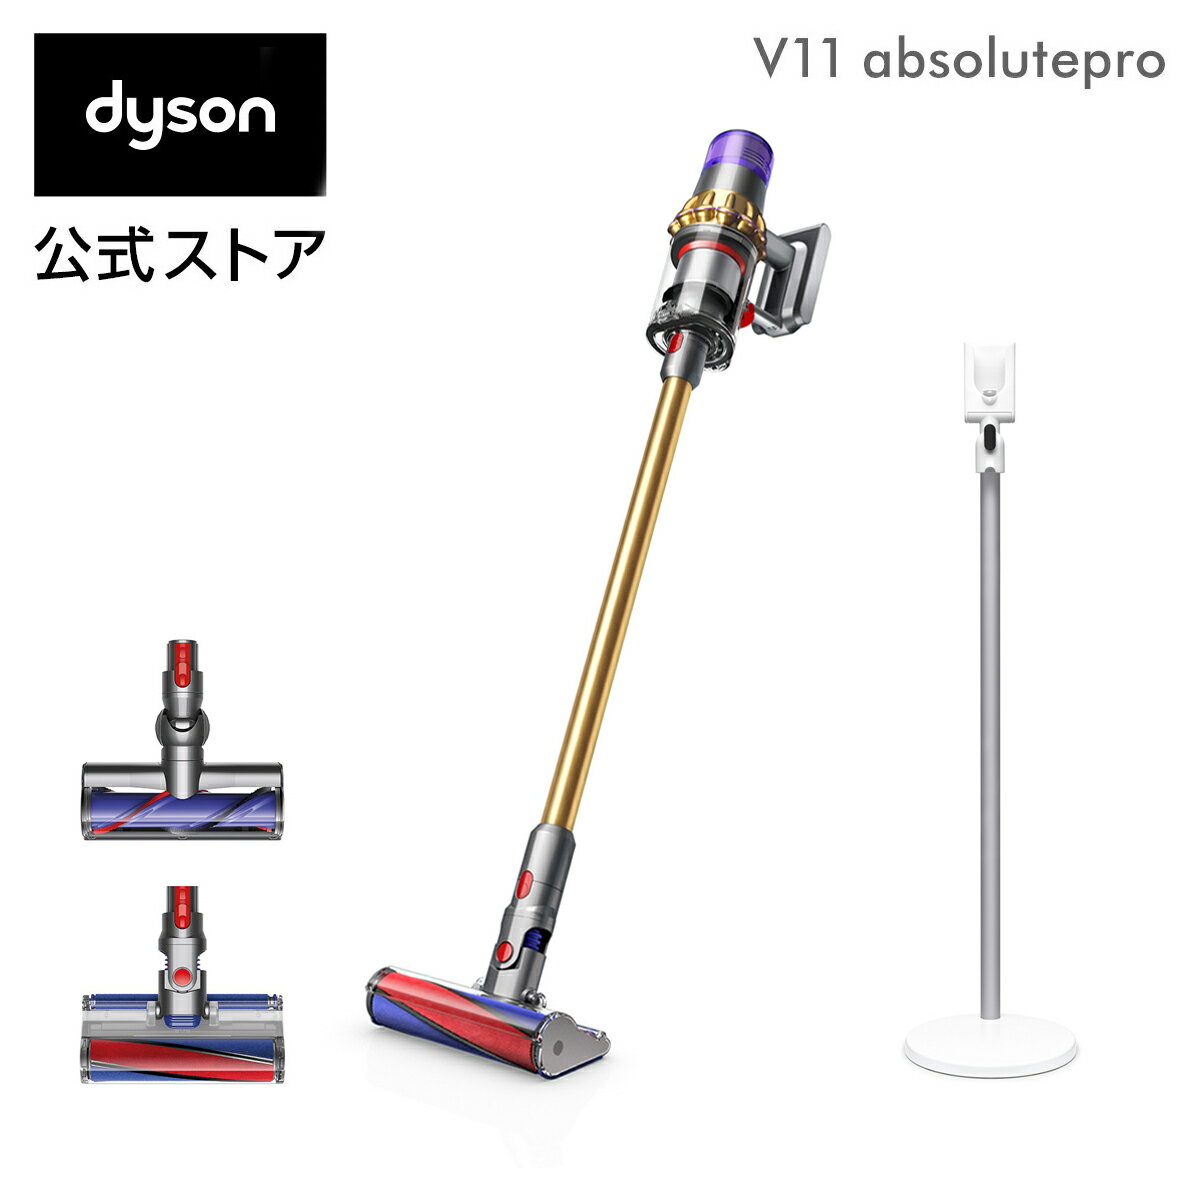 【直販限定】ダイソン Dyson V11 Absolutepro サイクロン式 コードレス掃除機 dyson SV14EXT 2019年最新モデル